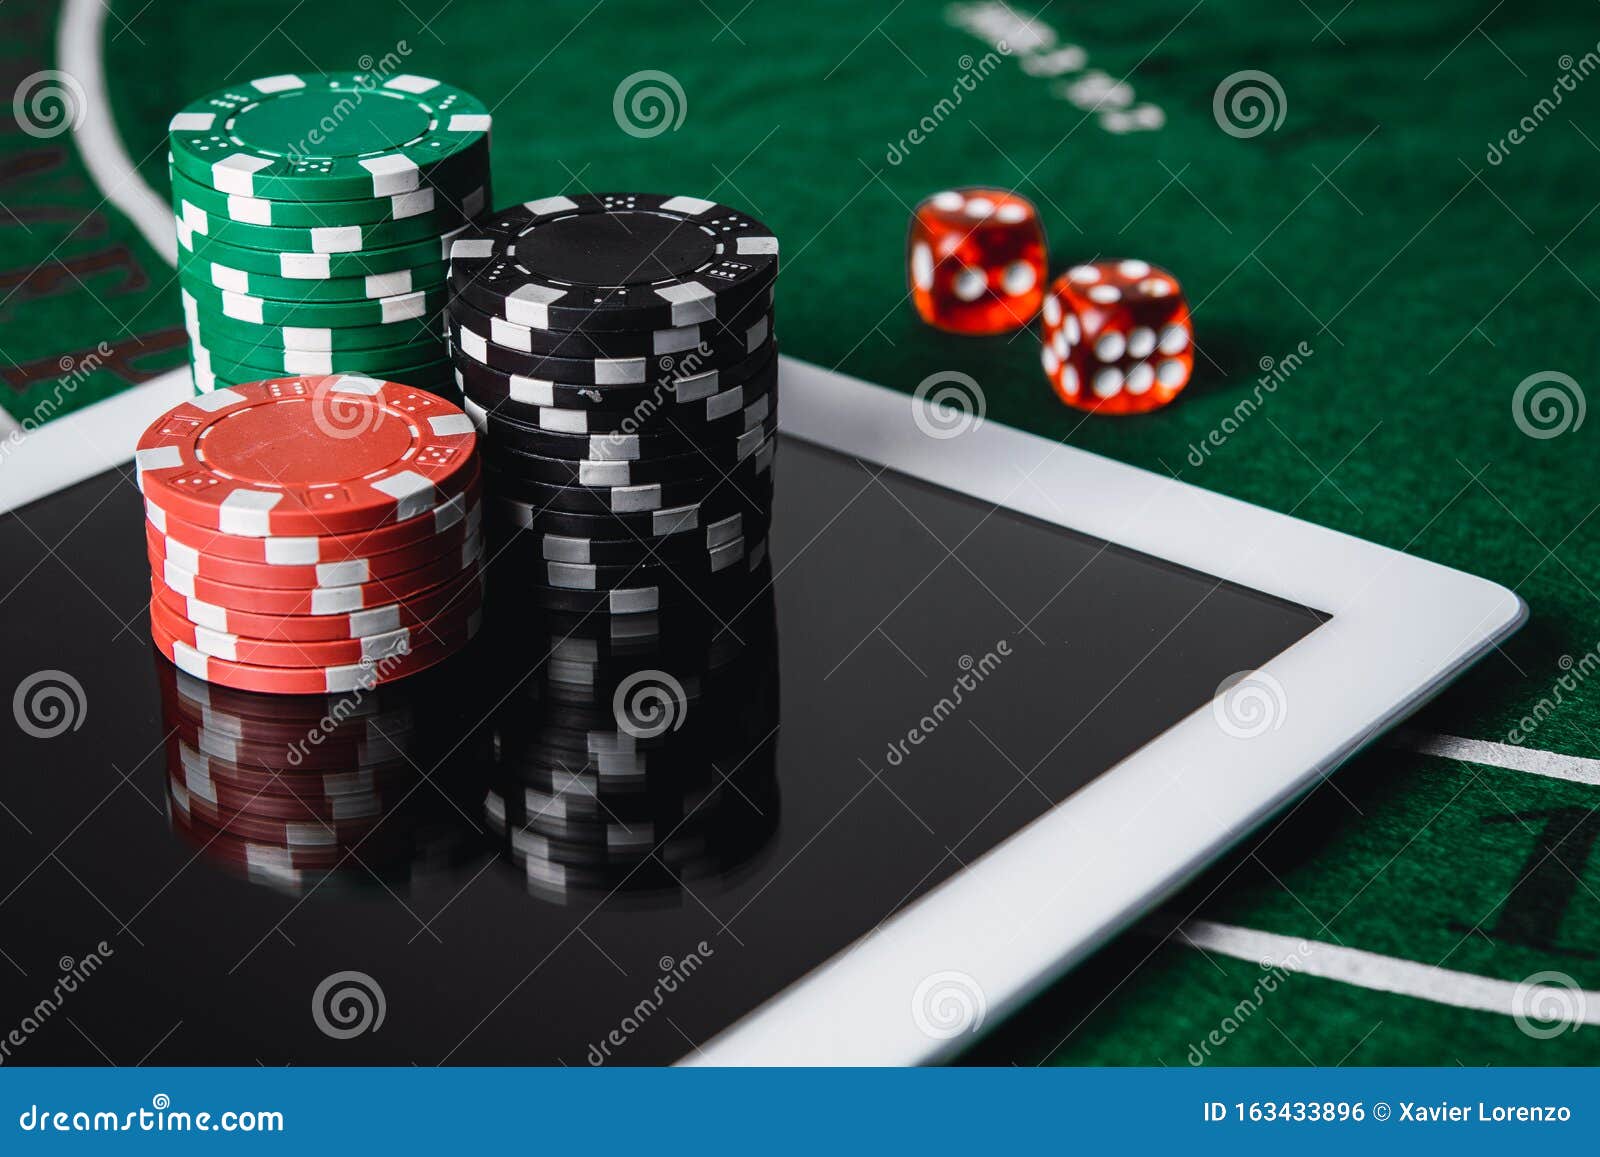 ¿Qué piensan realmente sus clientes acerca de su jugar en el casino en línea?